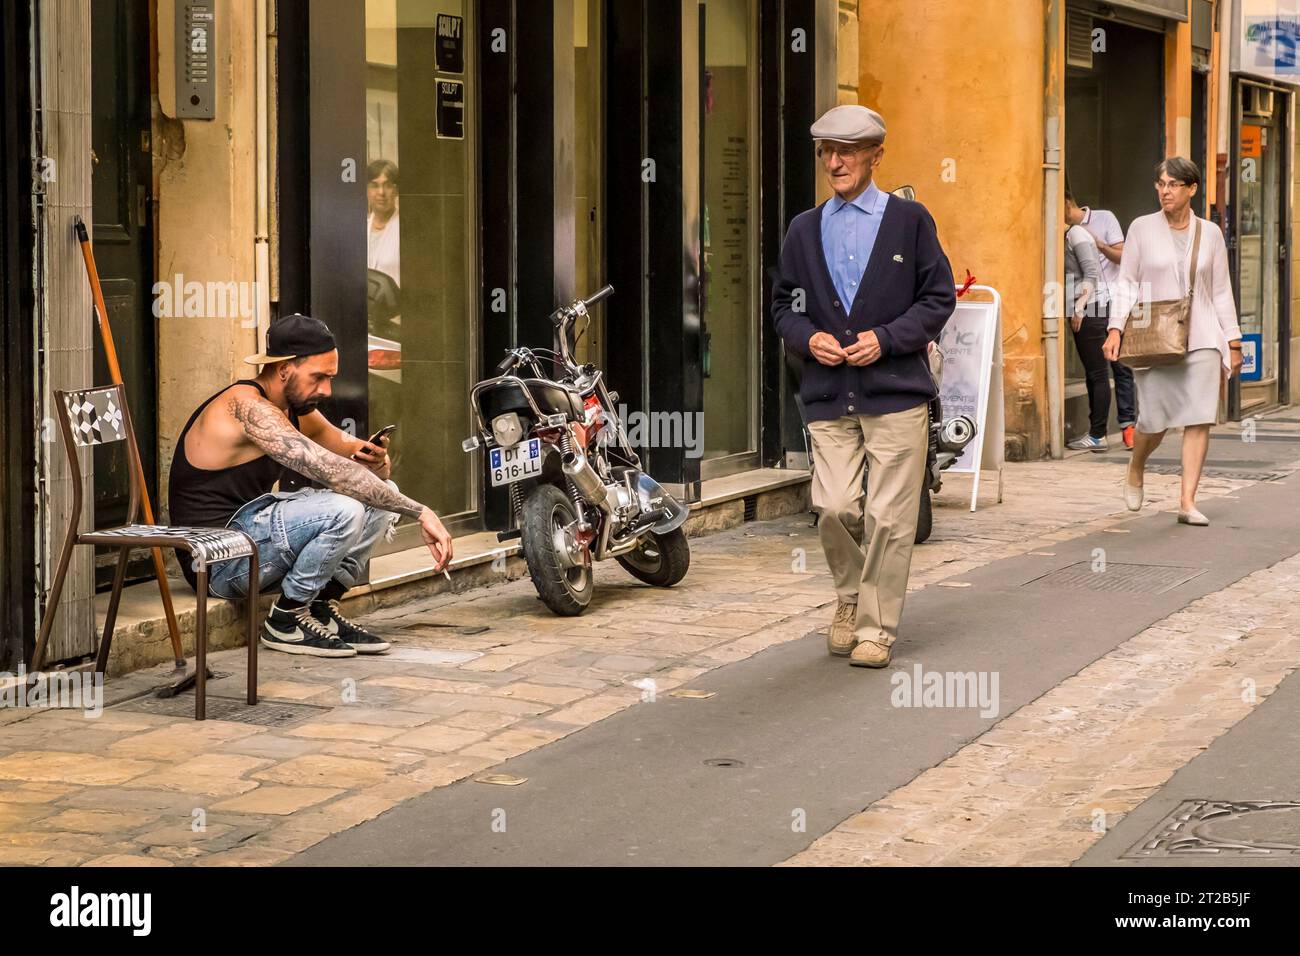 Personnes individuelles marchant ou assis sur le trottoir d'une rue pavée dans la vieille ville, Aix-en-Provence, sud de la France. Banque D'Images